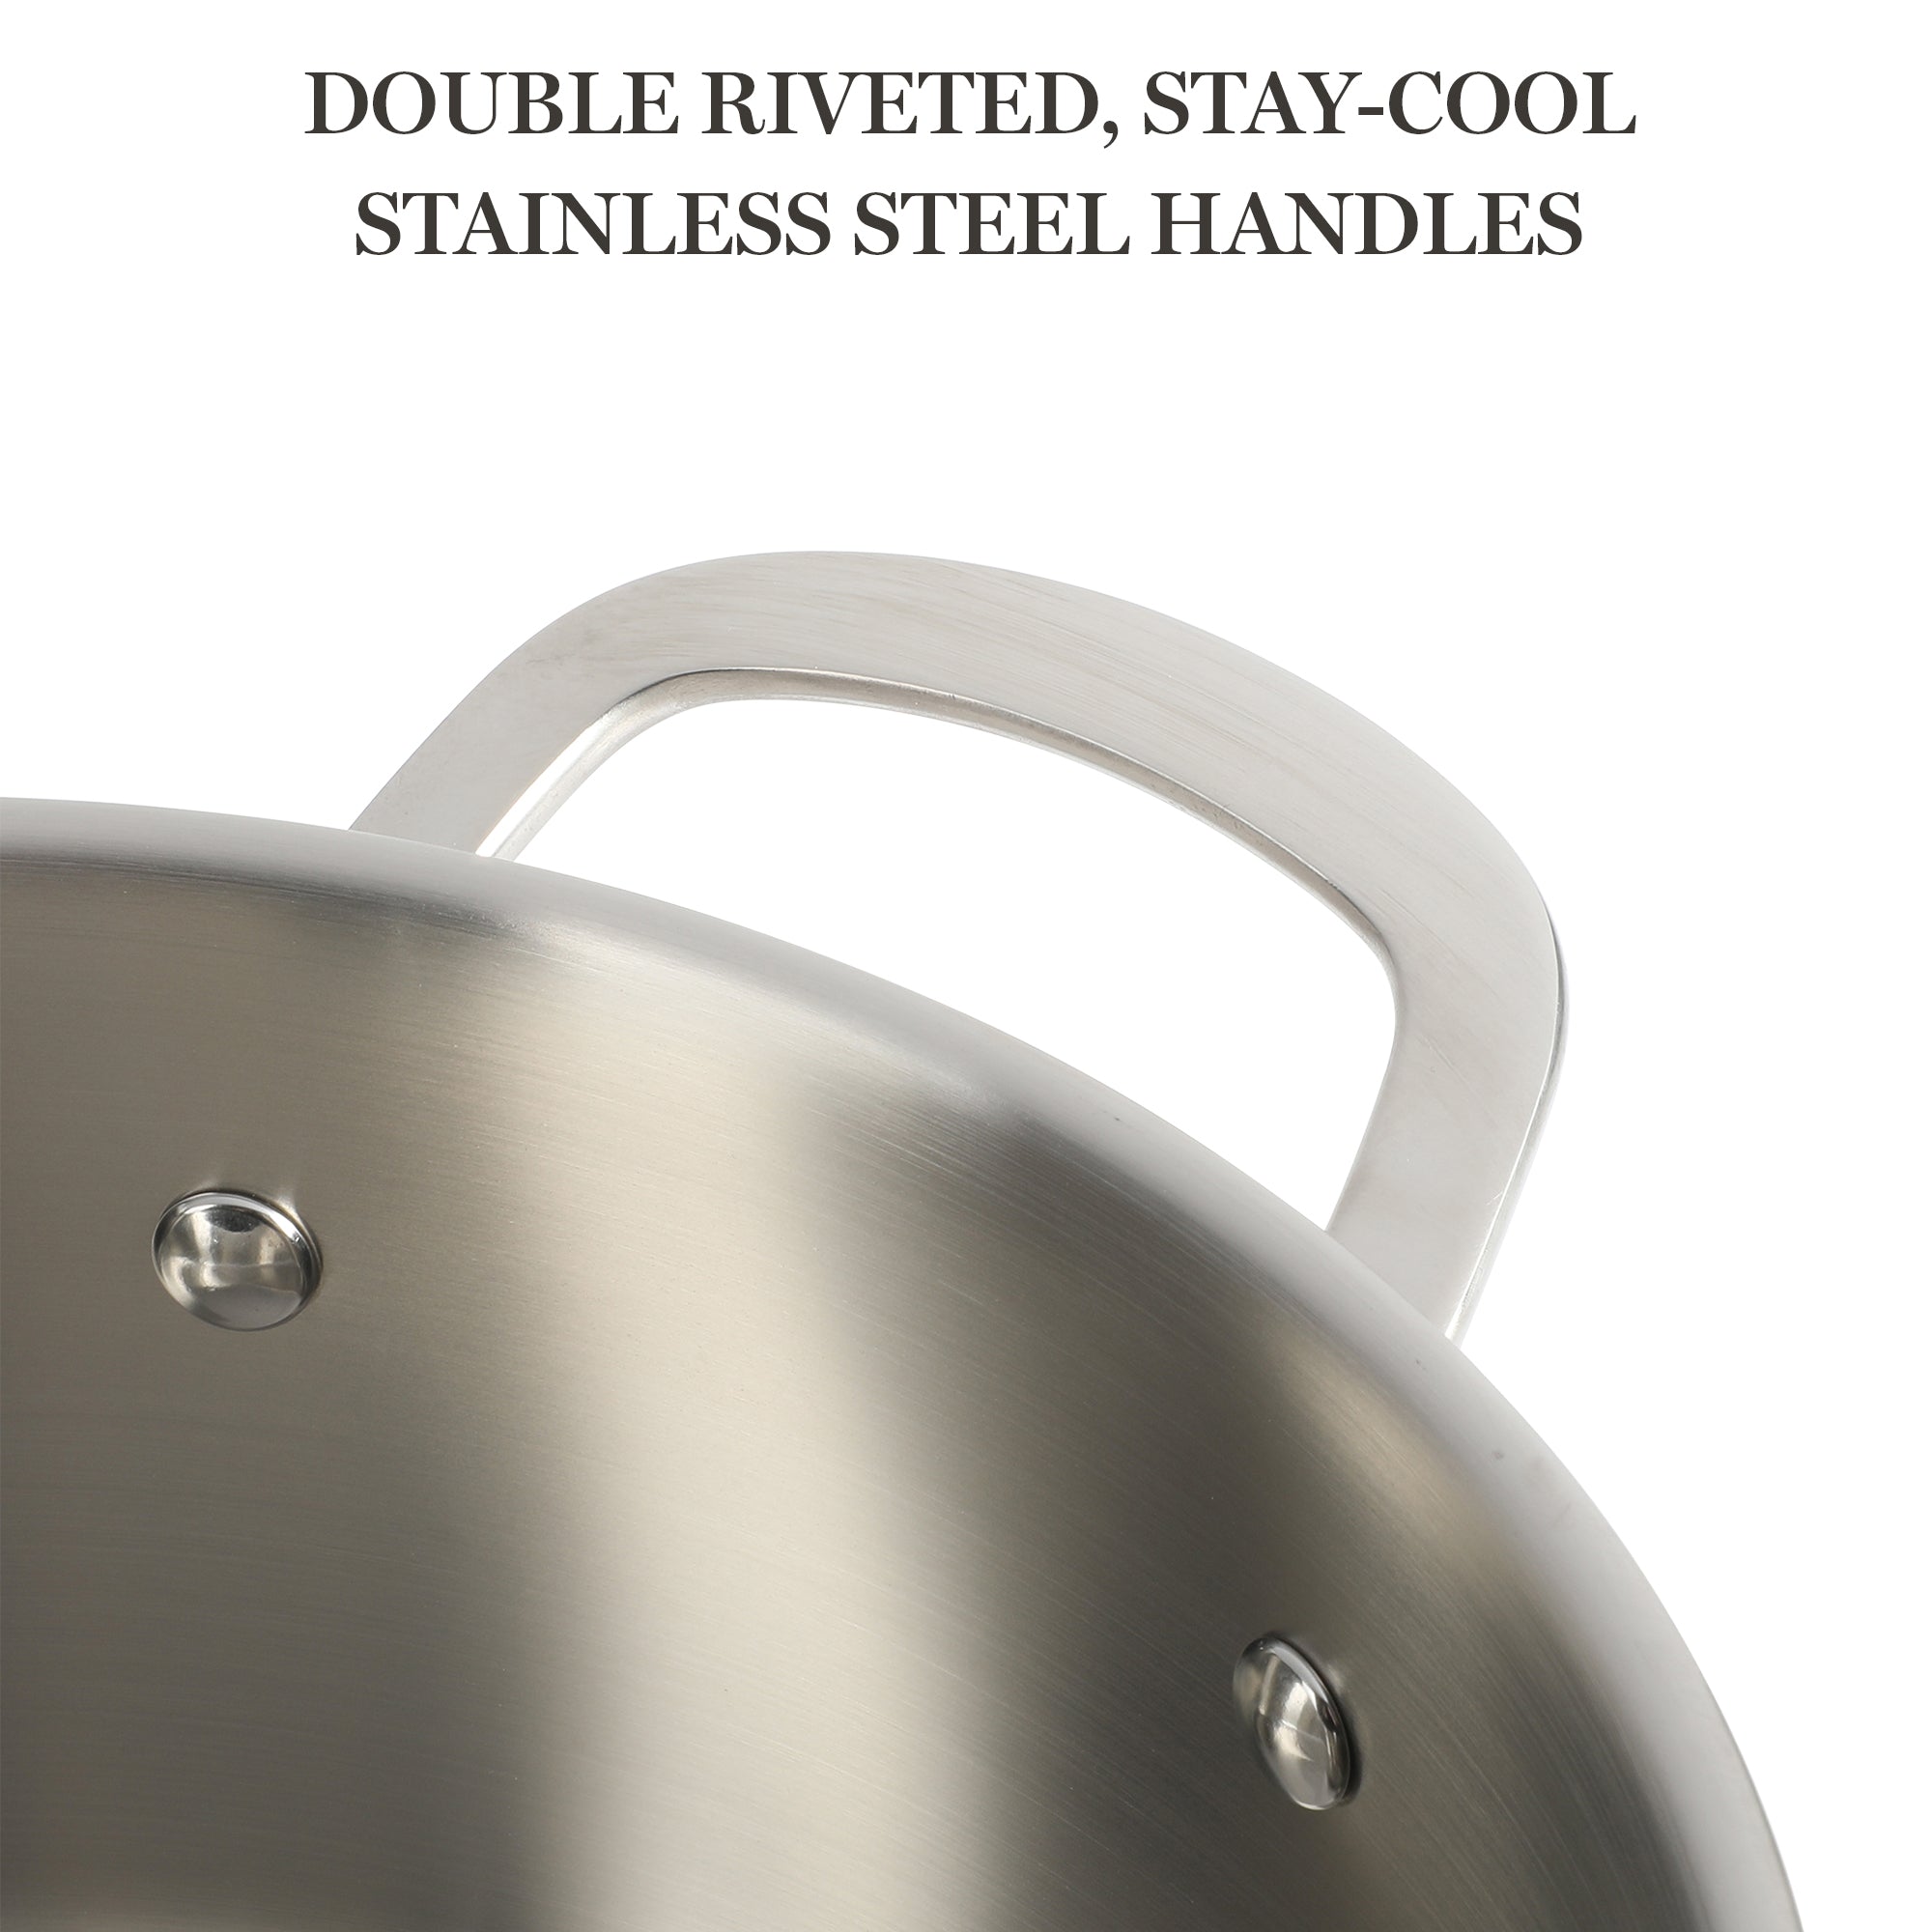 Martha Stewart Castelle 5-Quart Stainless Steel Dutch Oven